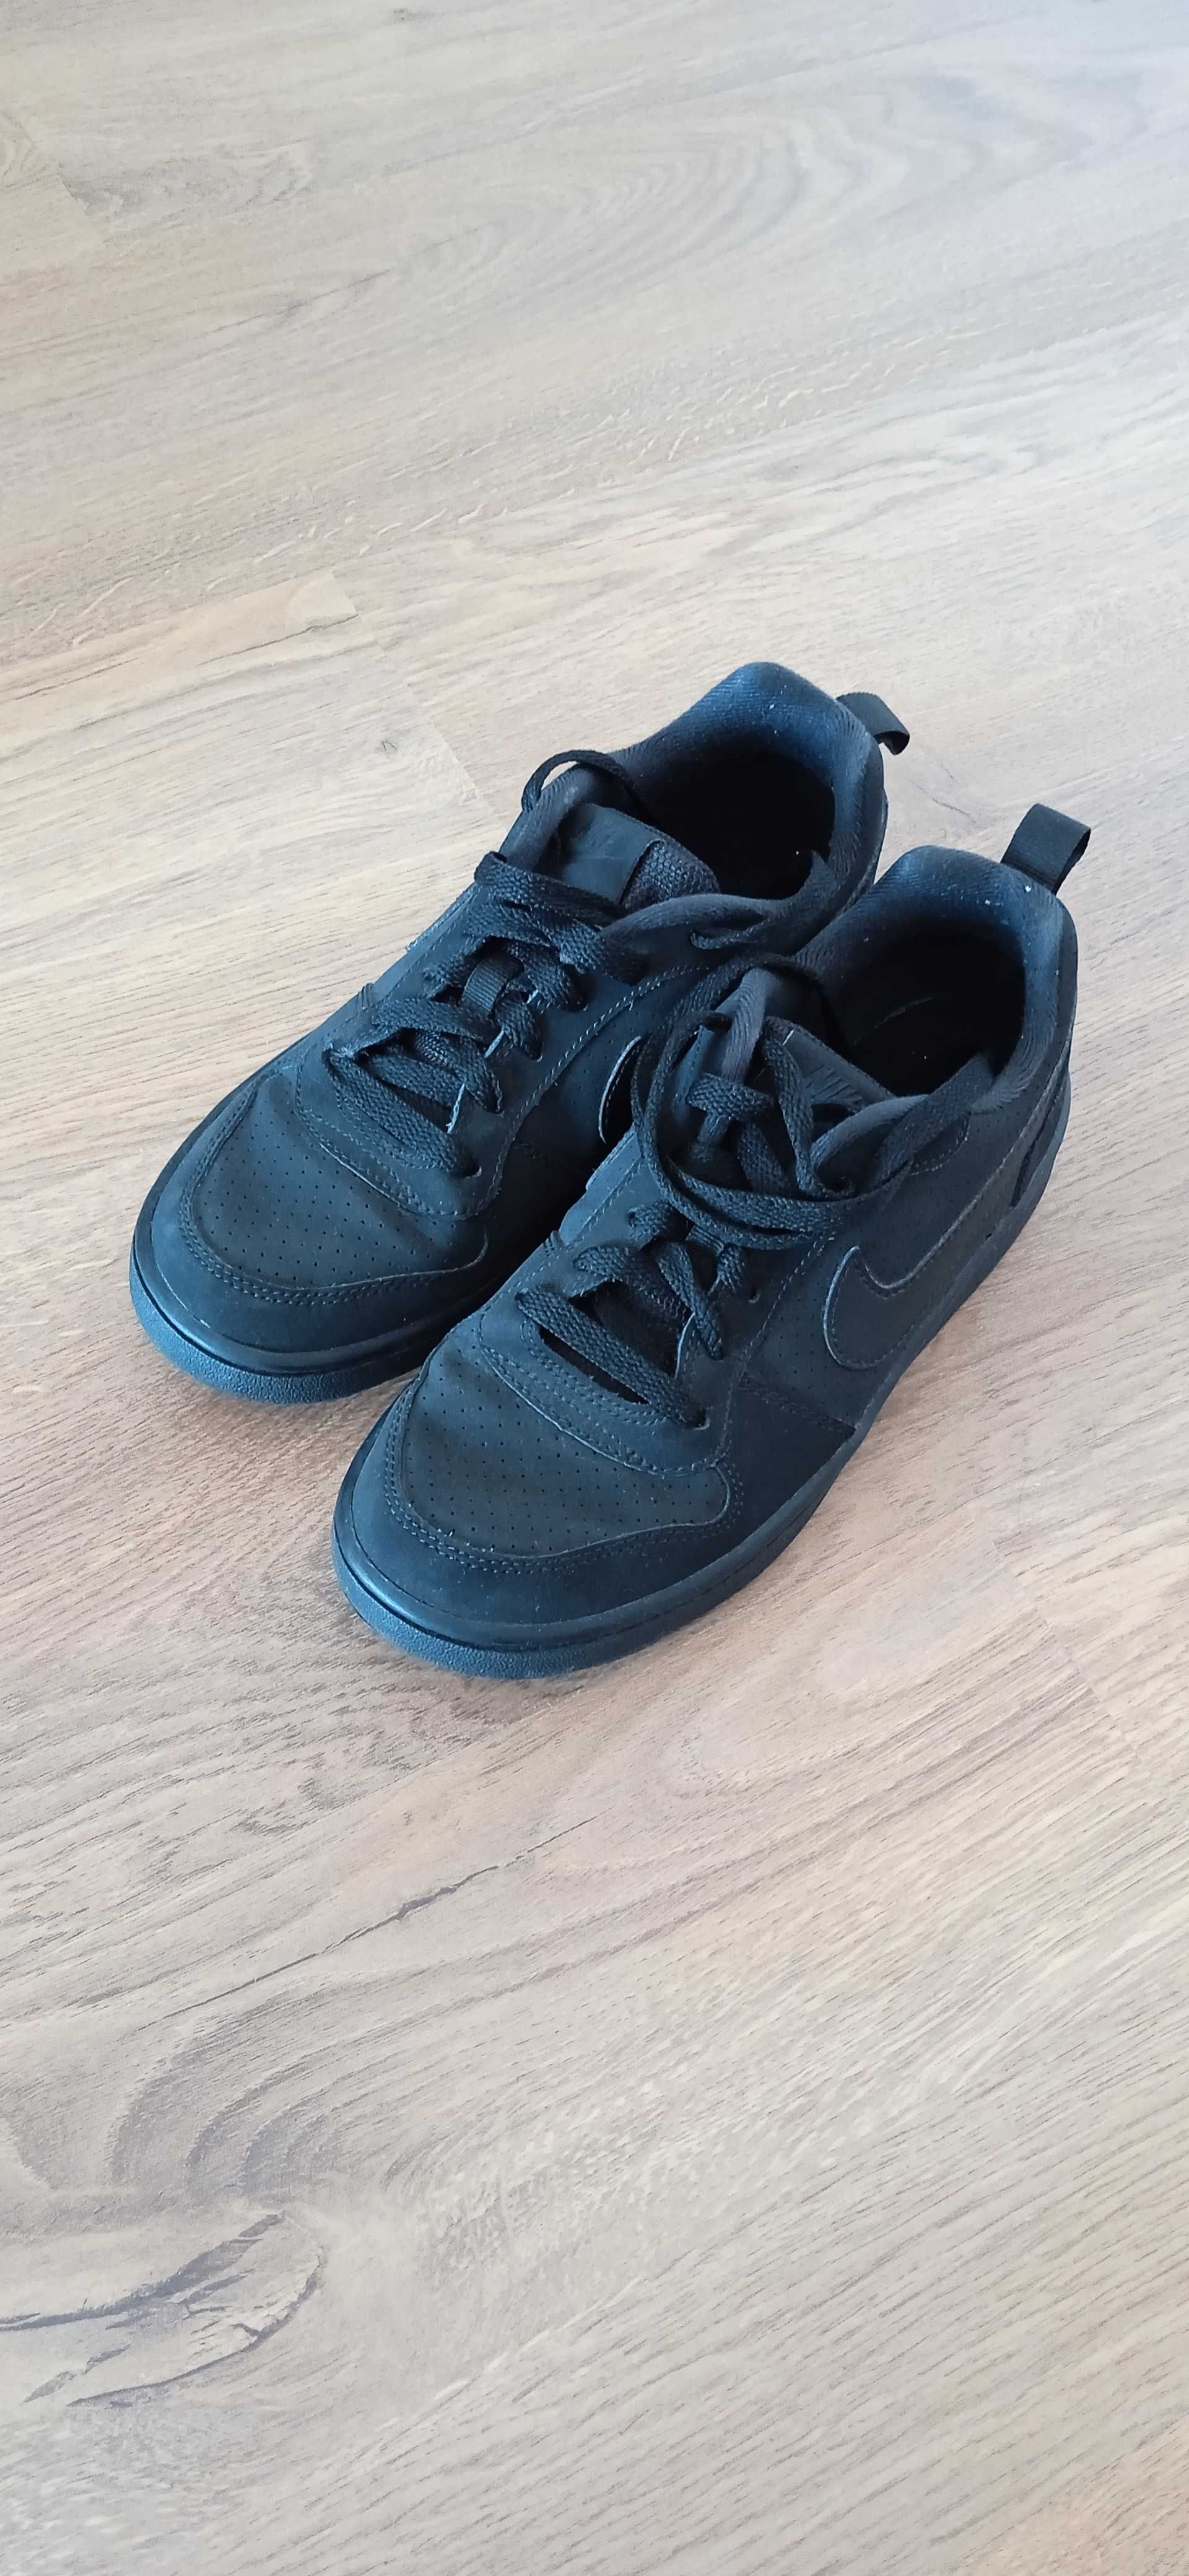 Sapatilhas Nike negras 37.5 como novas